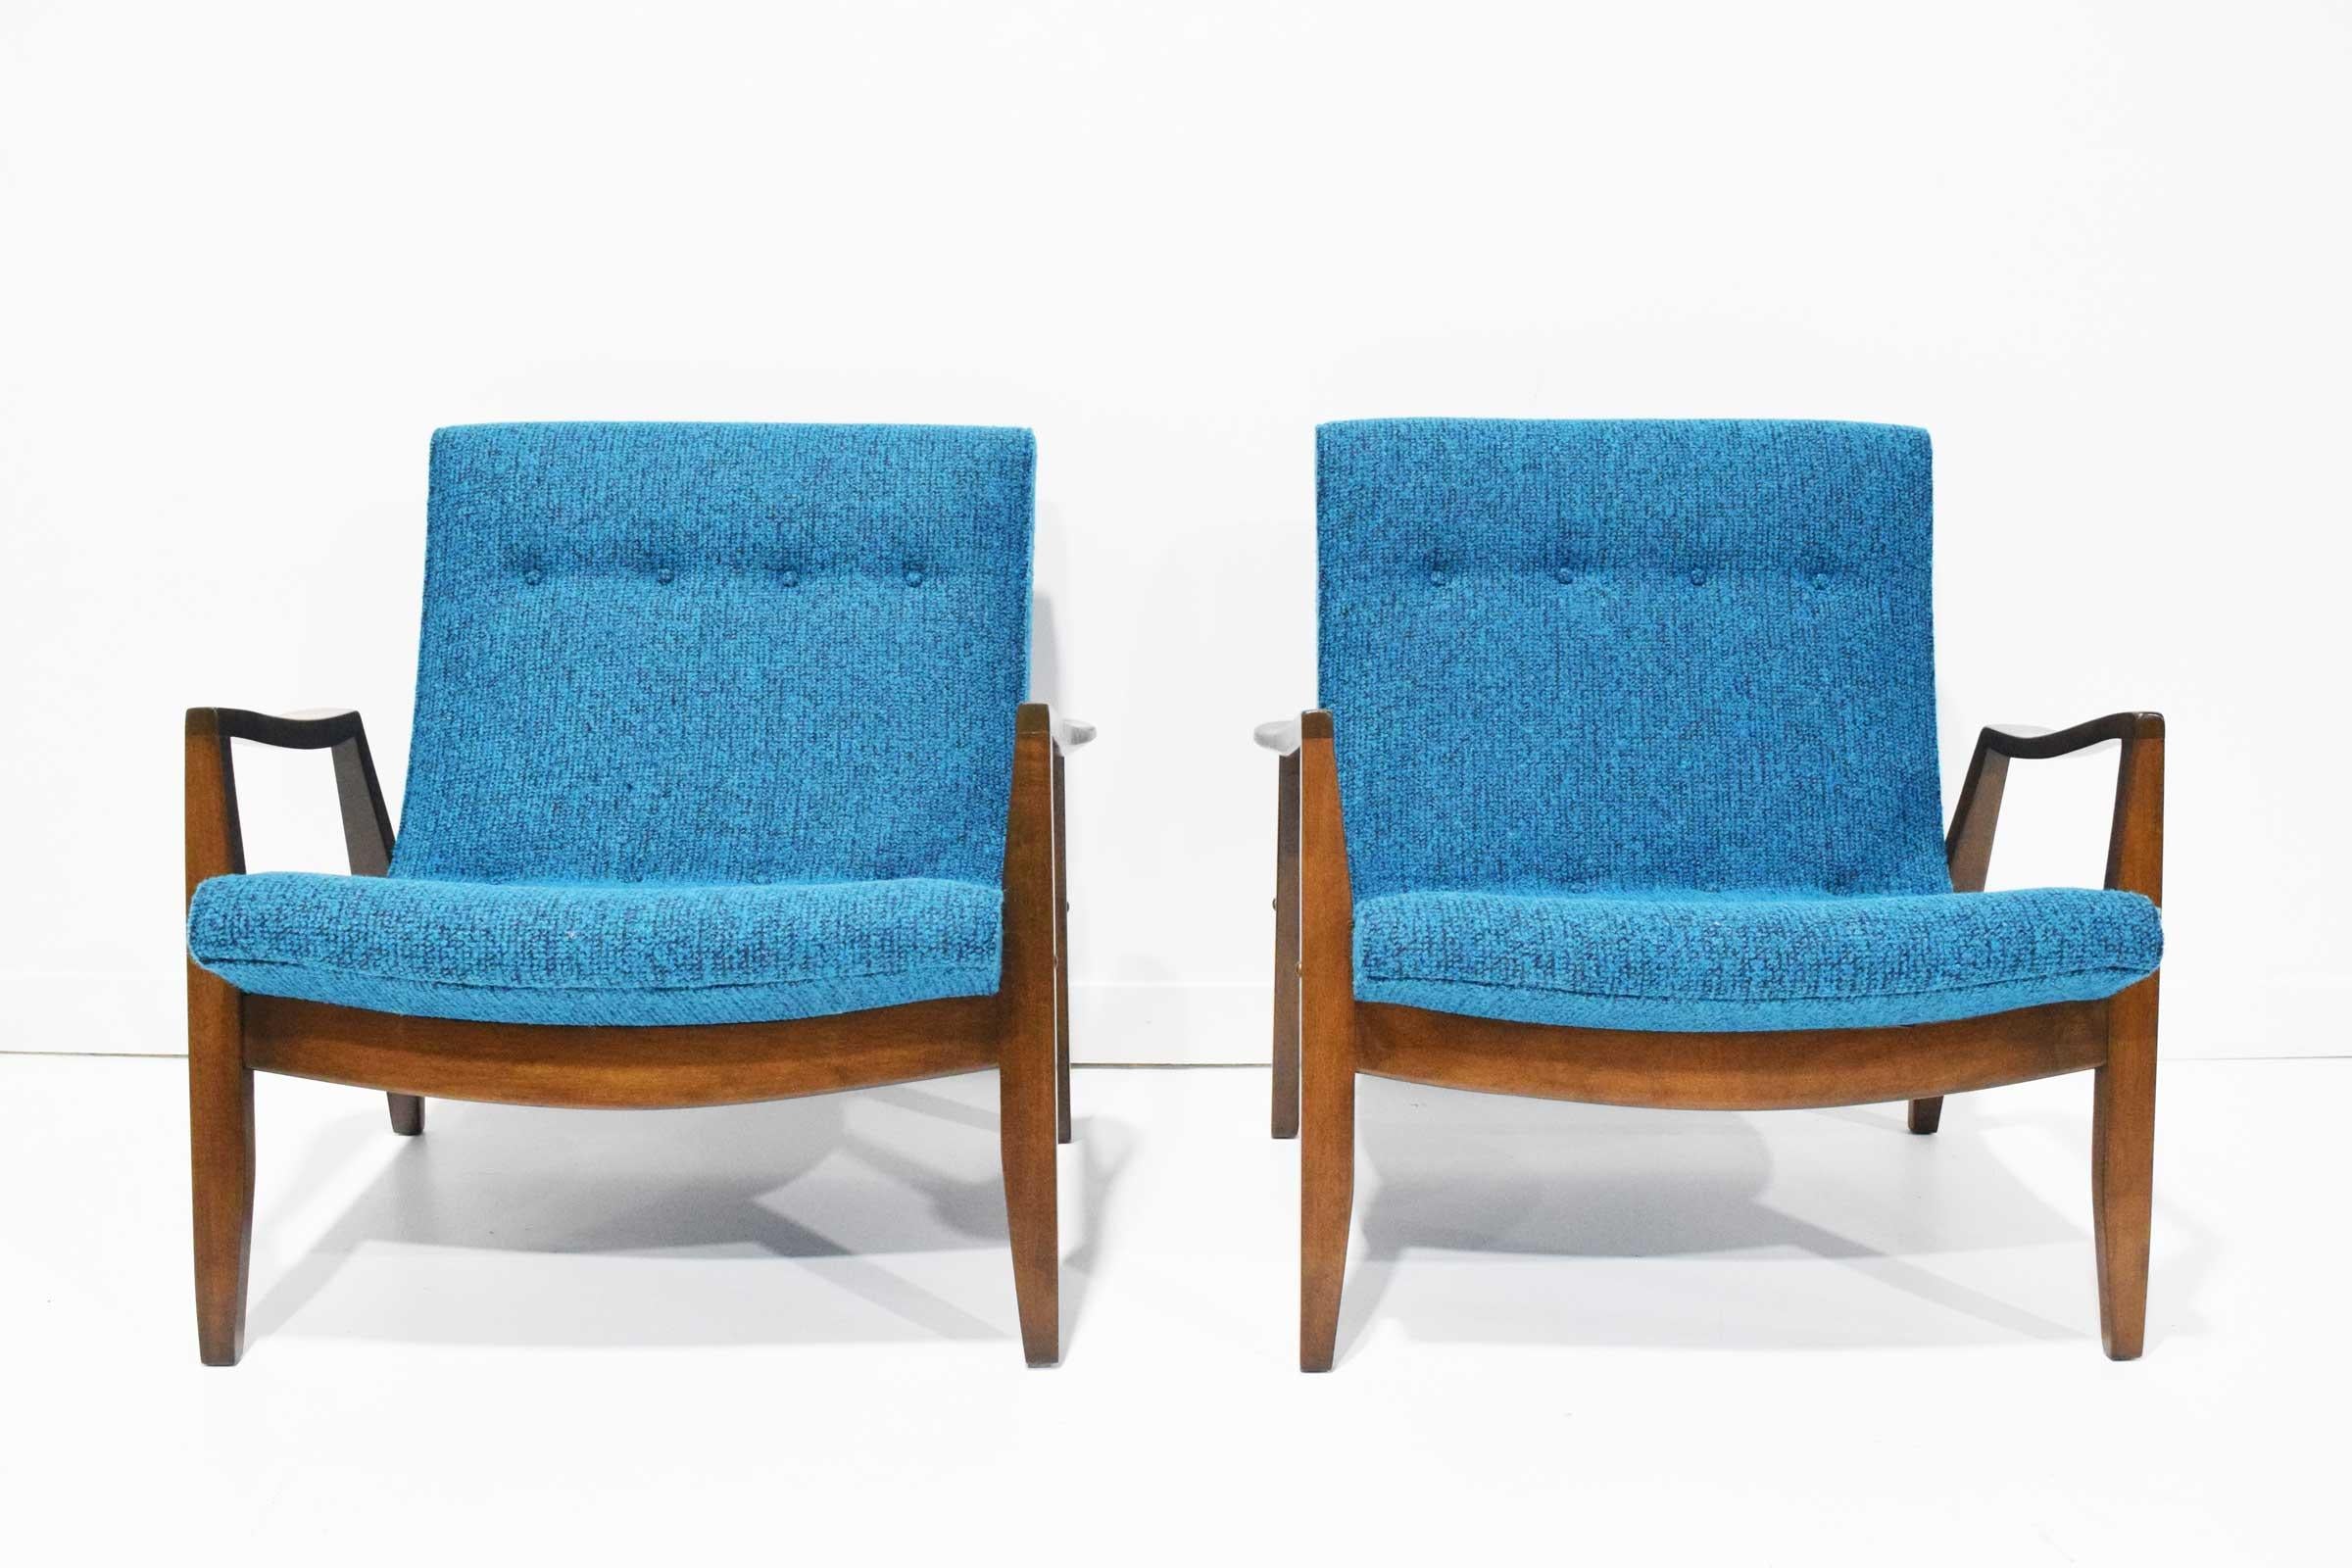 Frais et prêt à partir. Ces chaises ont été restaurées. La tapisserie d'ameublement est un tissu Knoll de couleur bleu vif.